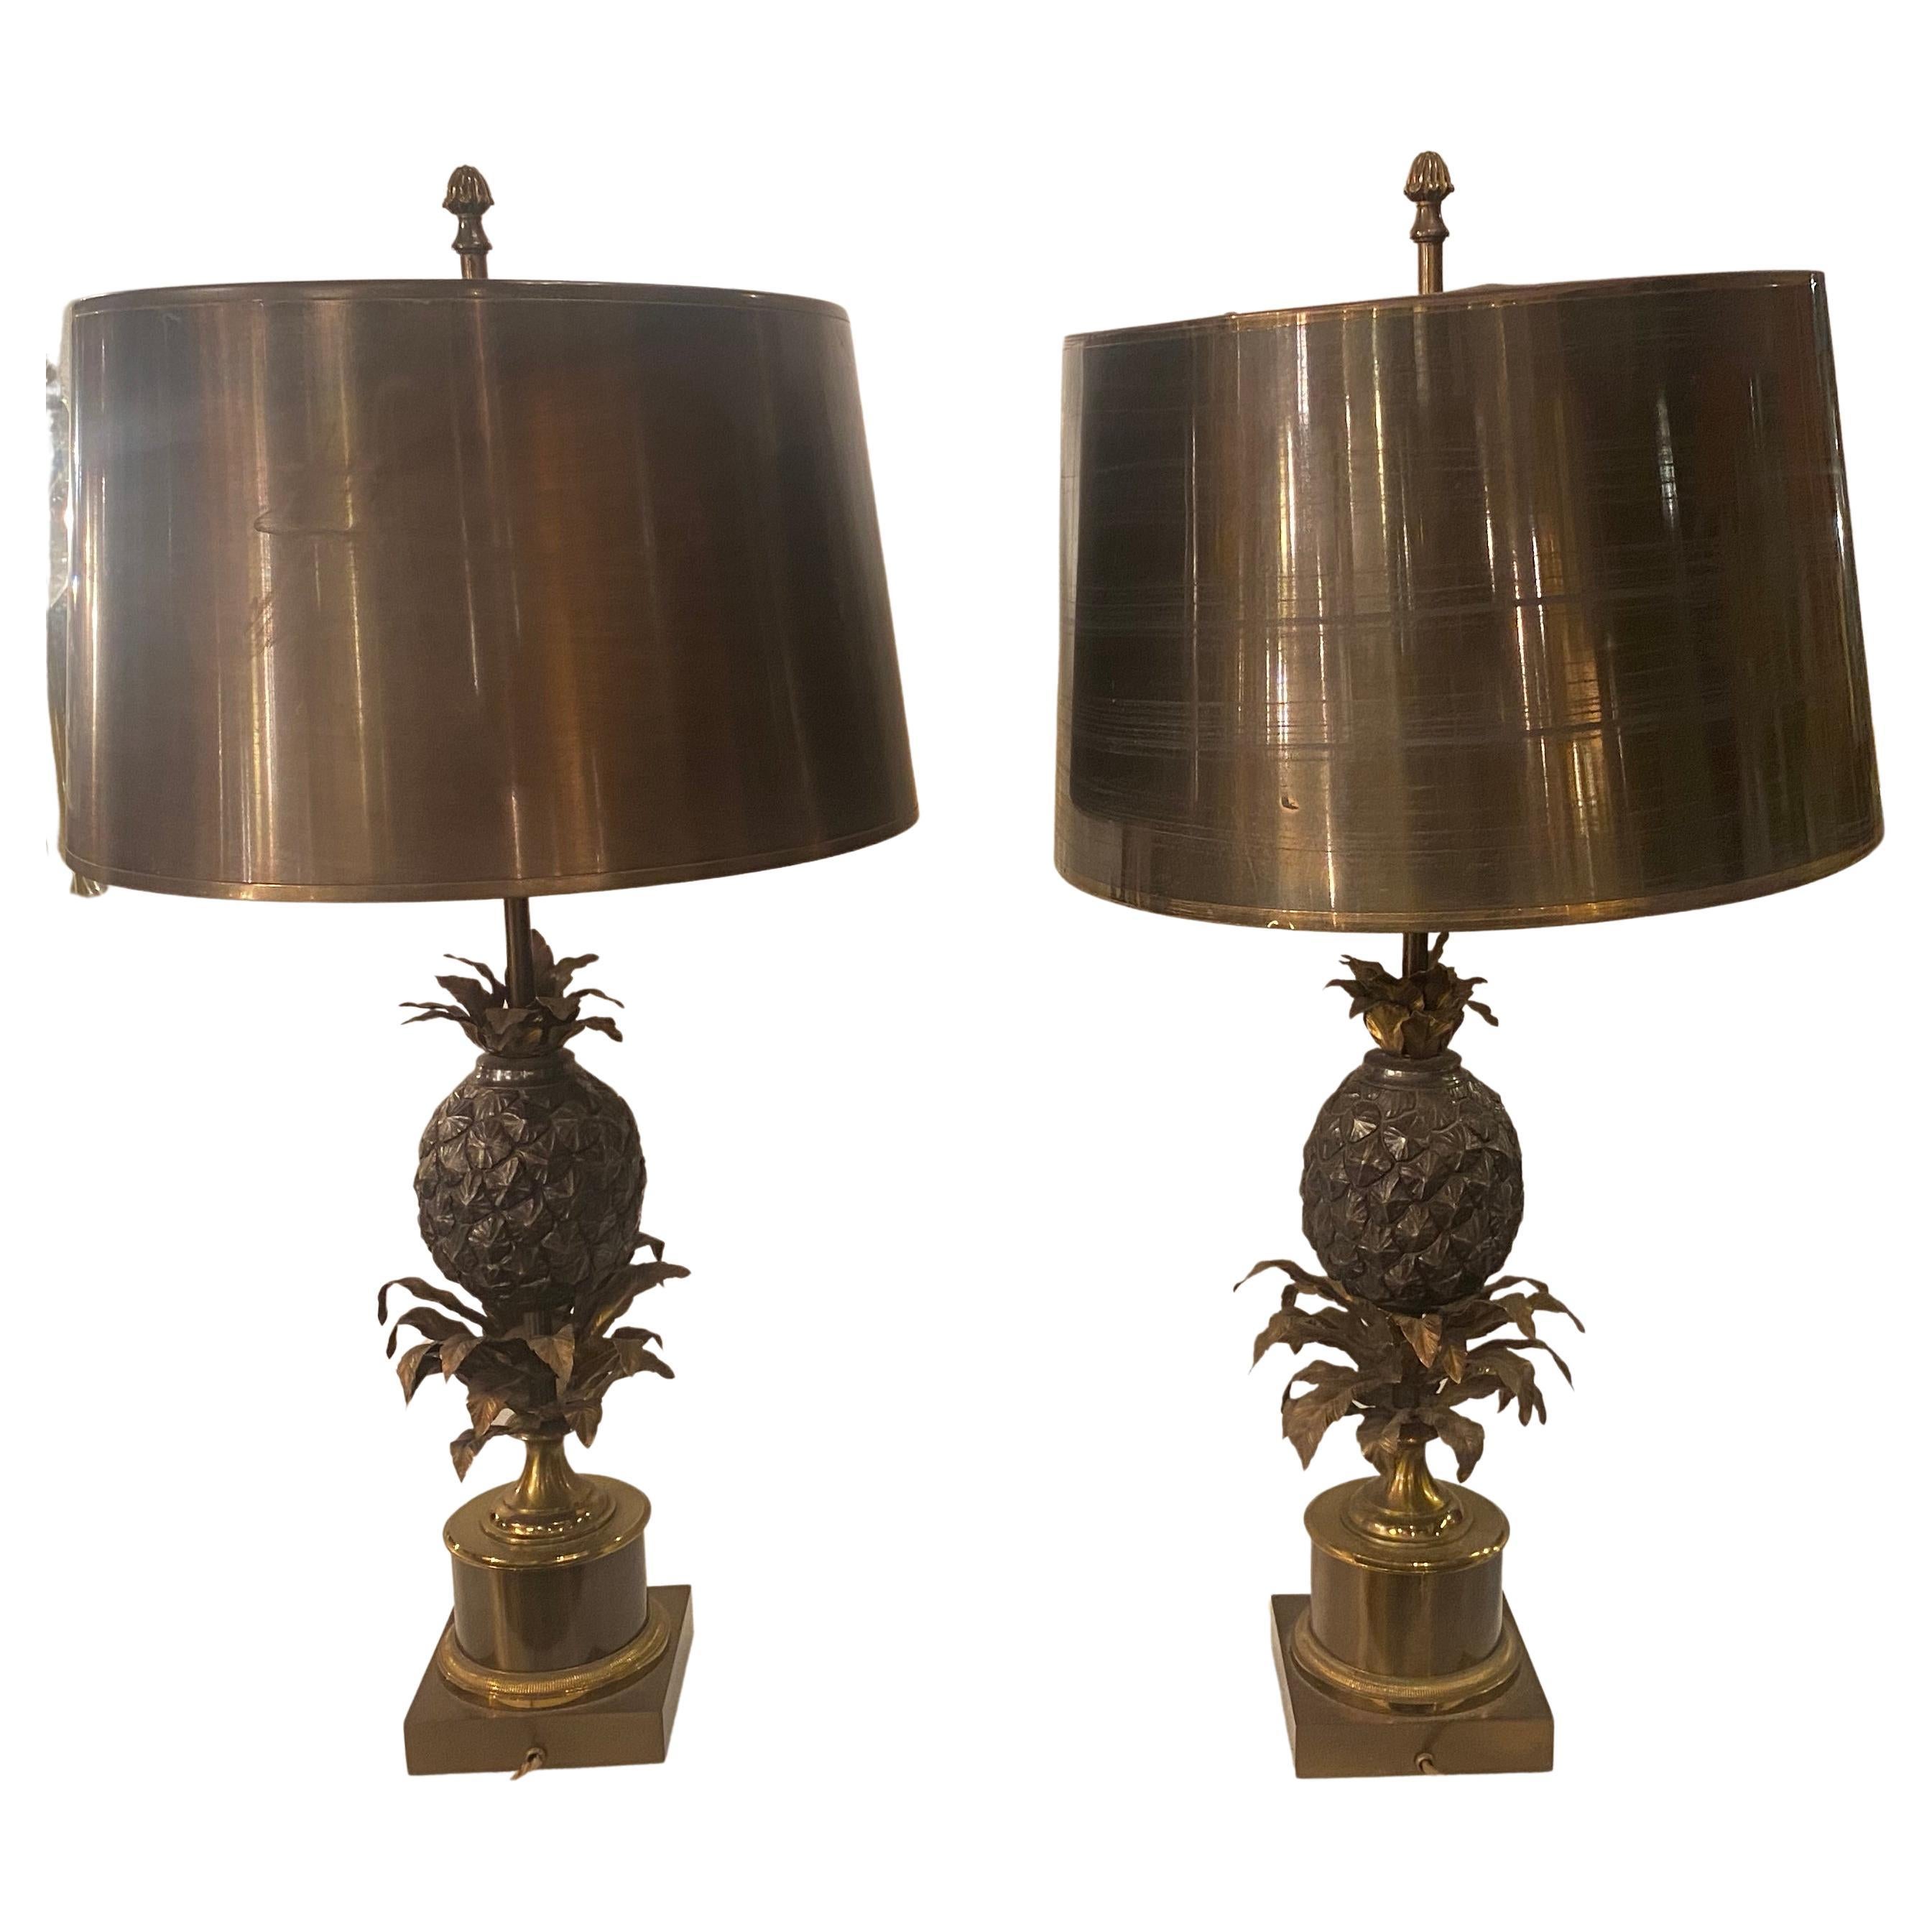 Paire de lampes ananas en bronze ou abat-jour similaire en laiton, signées Charles, 1950/70